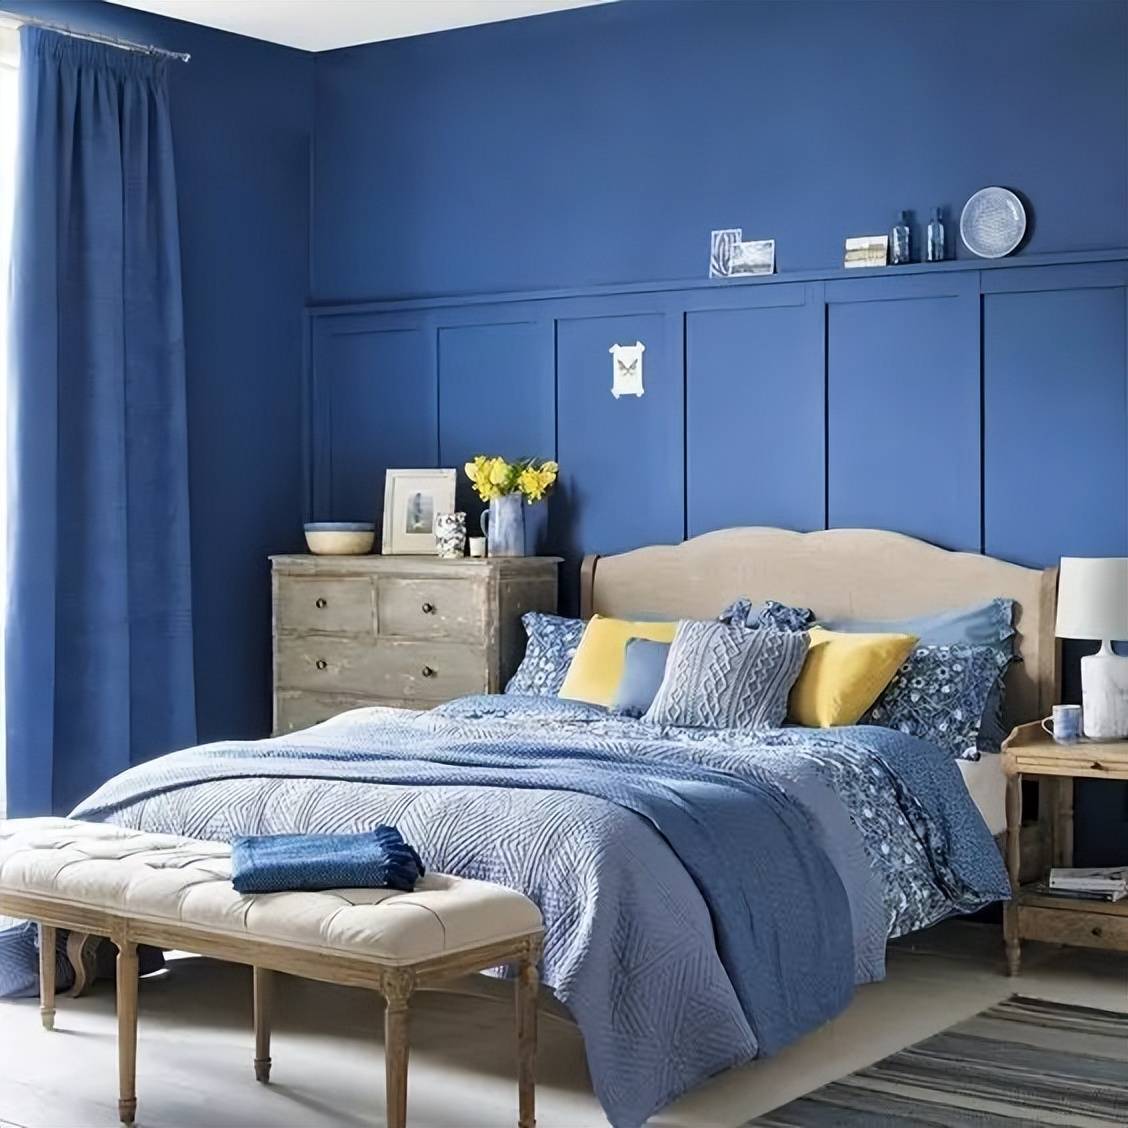 为了缓解冷色调的孤独感和冰冷感,卧室装修可以以淡蓝色为主,以搭配